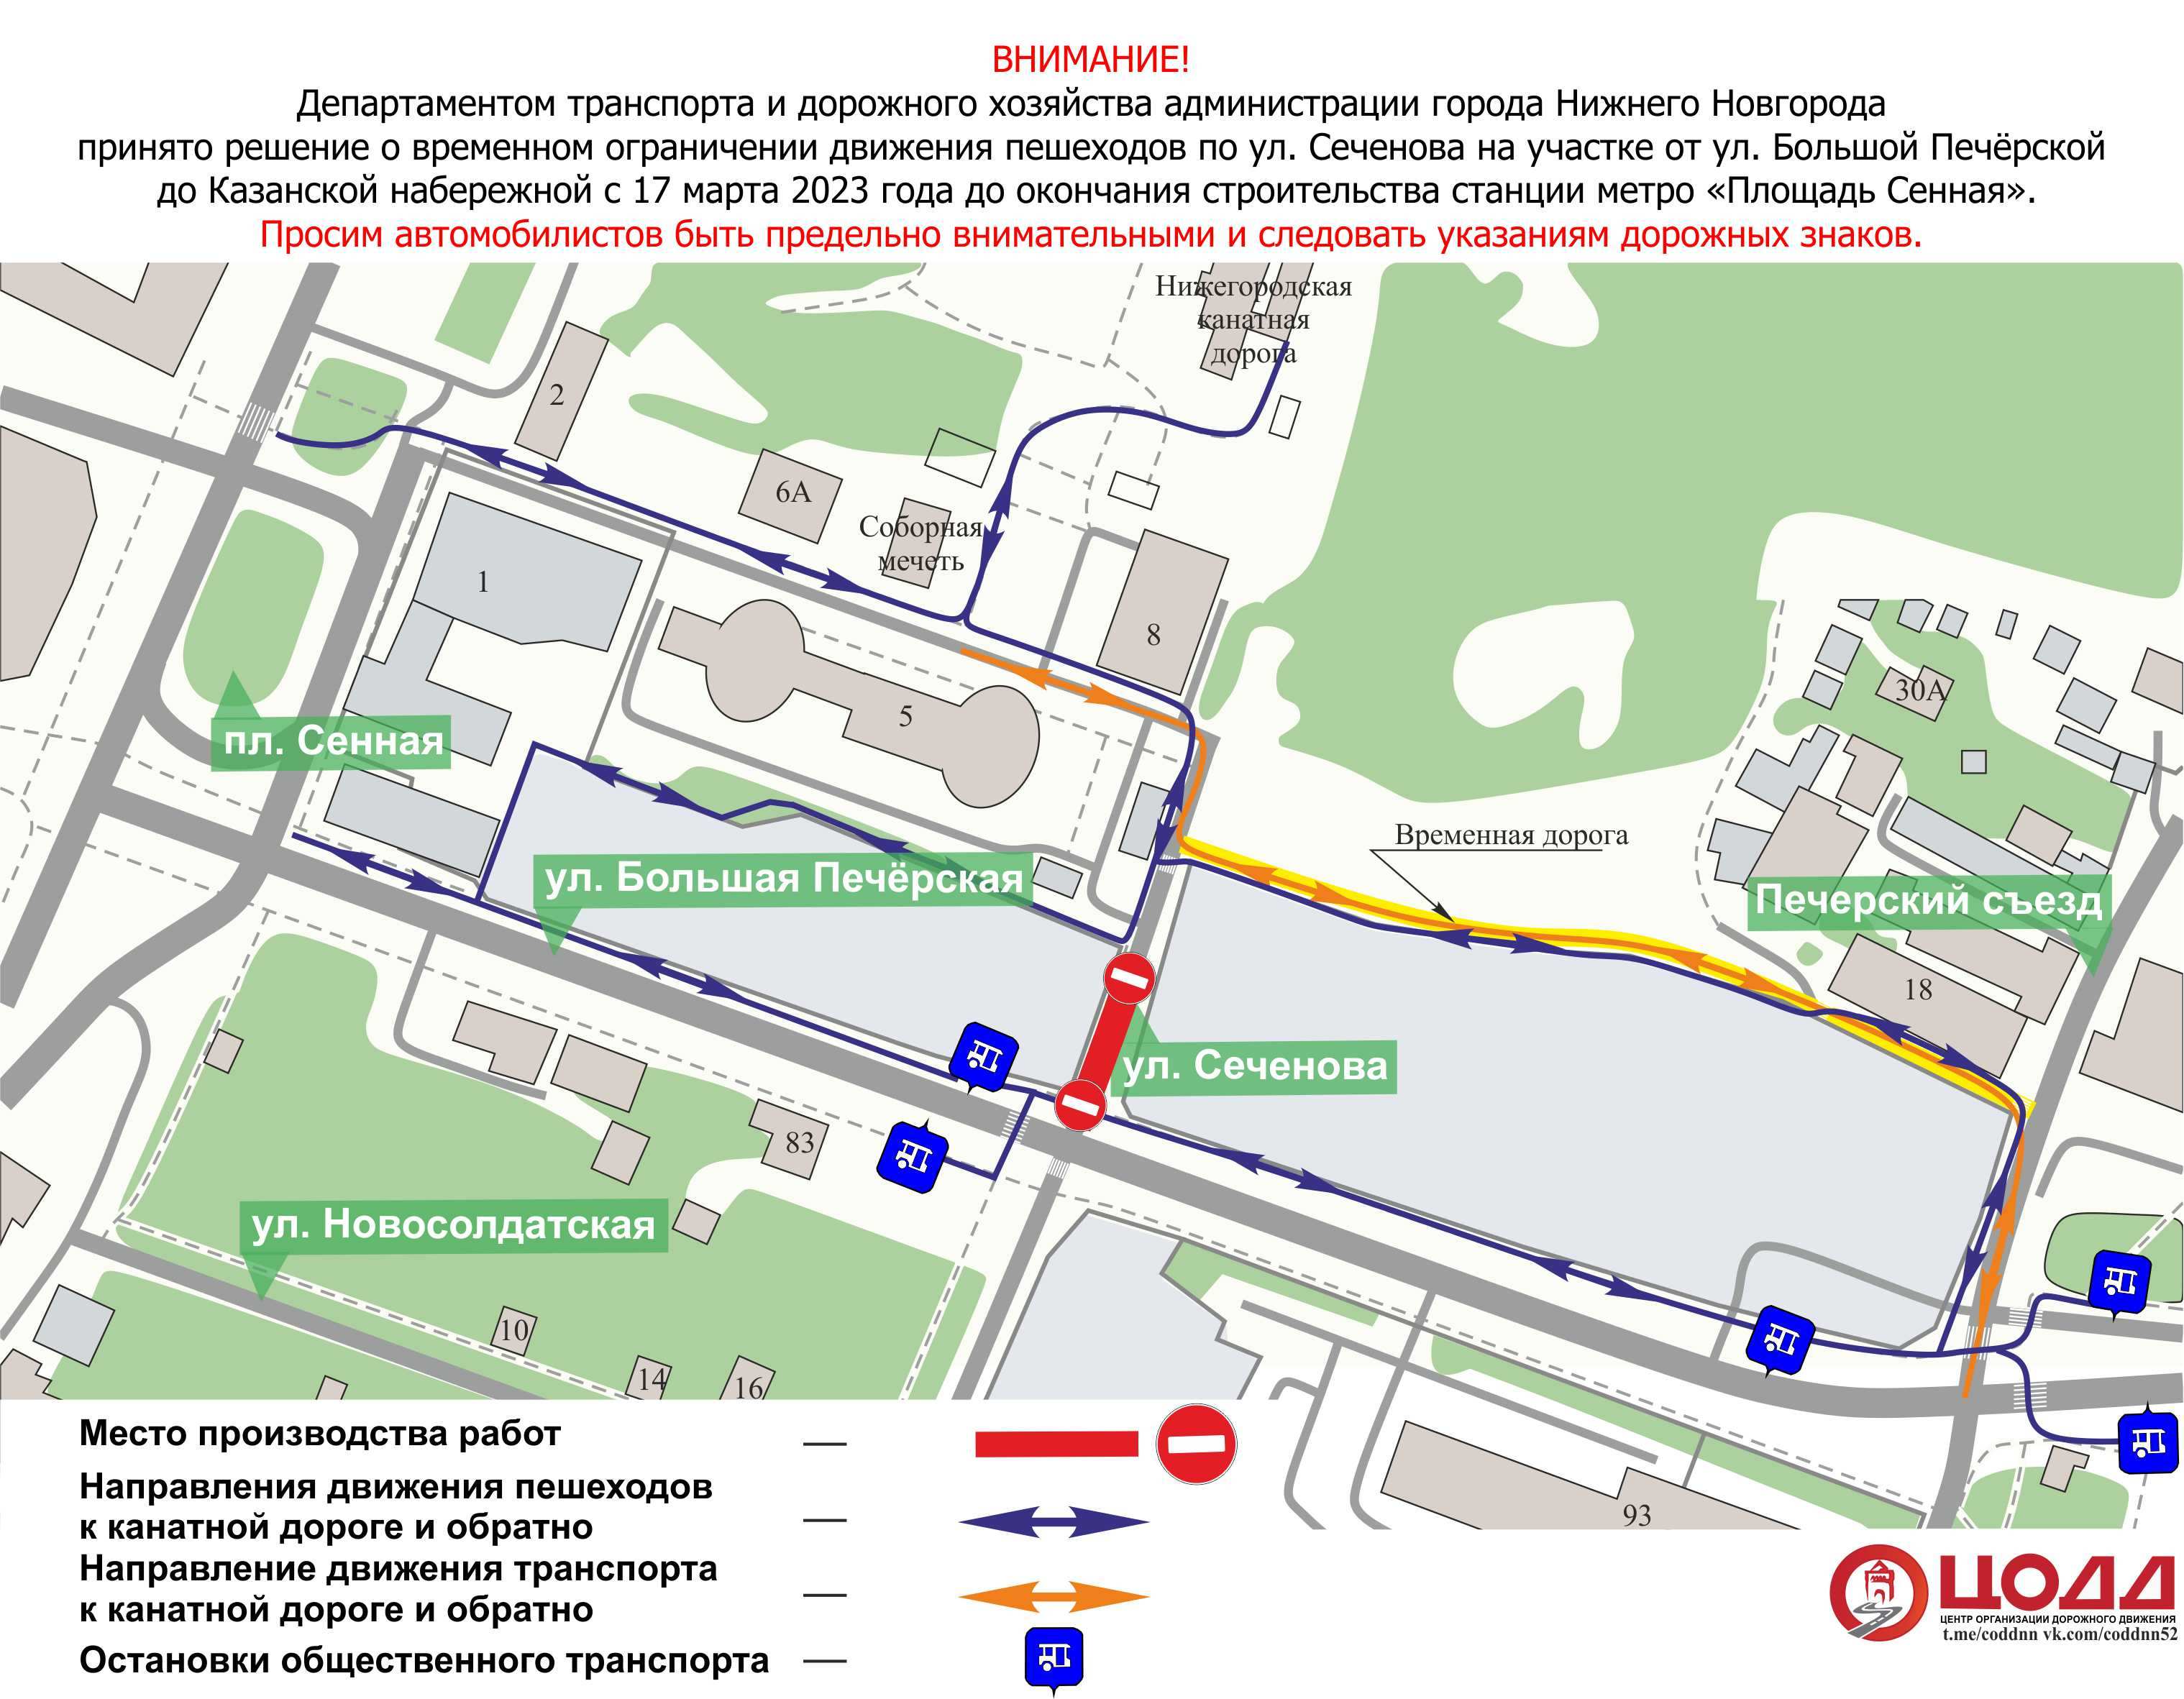 Улицу Сеченова в Нижнем Новгороде закрыли для пешеходов из-за строительства метро  - фото 1